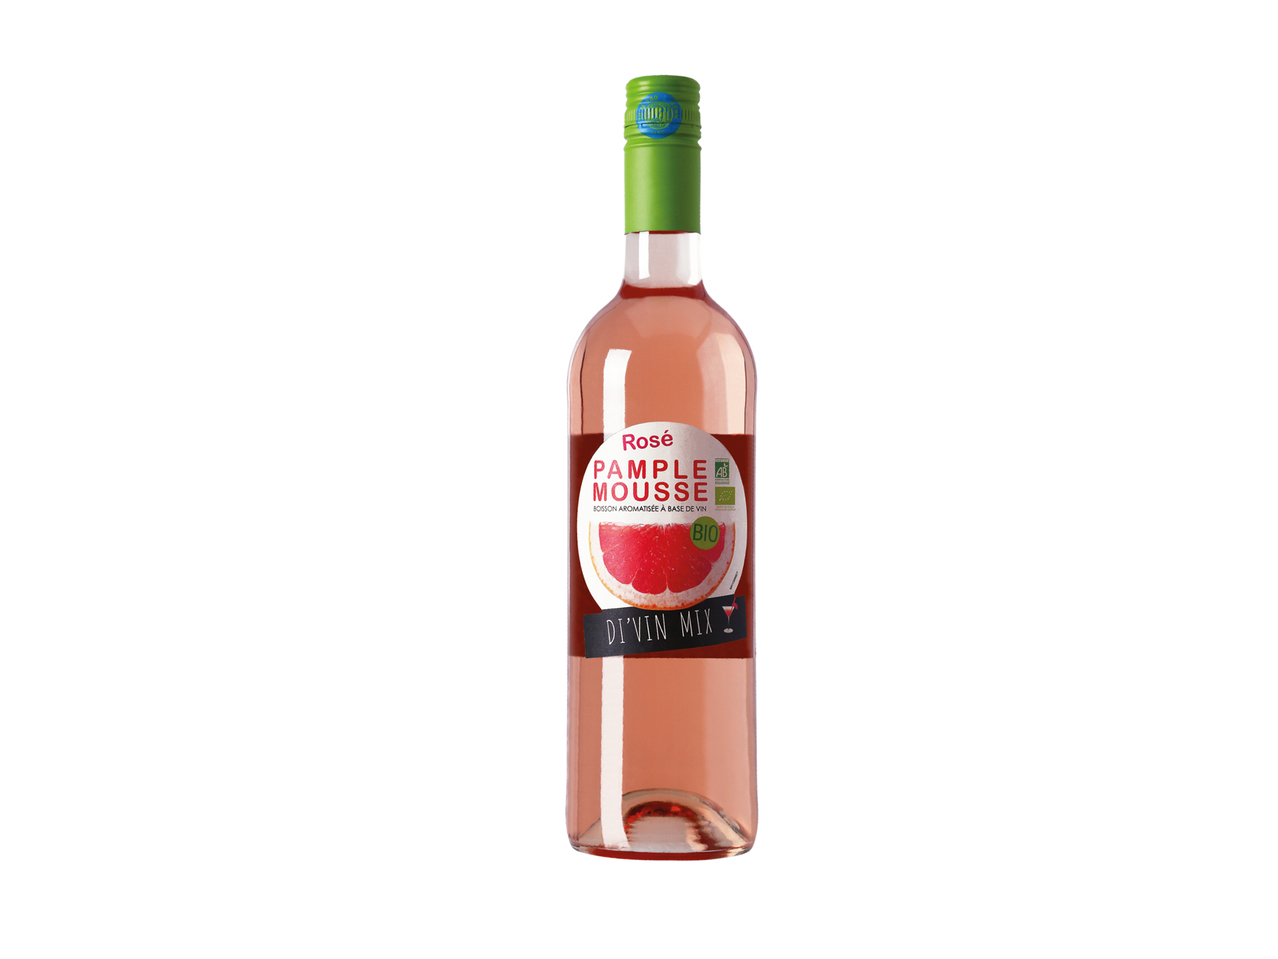 Di'vin mix rosé pamplemousse Bio1